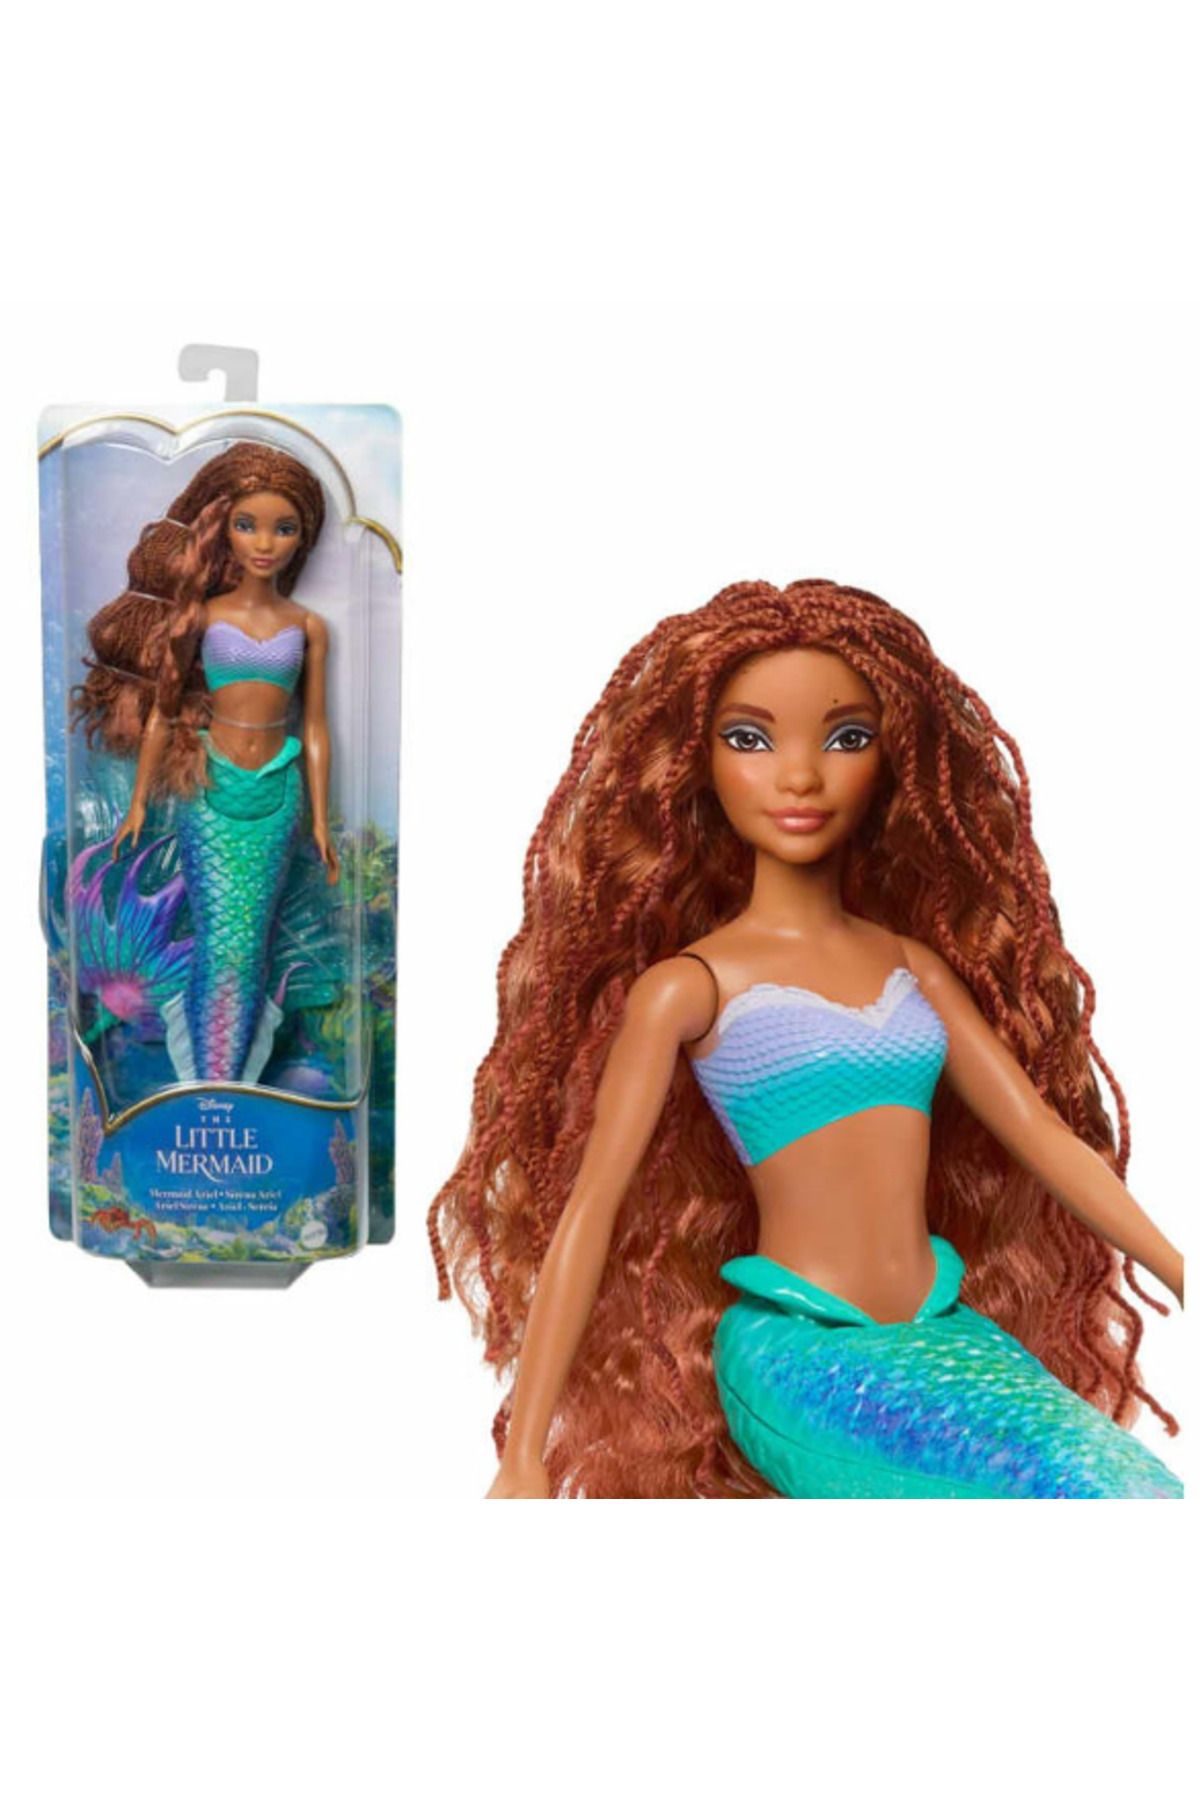 Genel Markalar Akdenizpos  Ug01 Hlx08 Disney Prenses Muhteşem Deniz Kızı (Yeni)